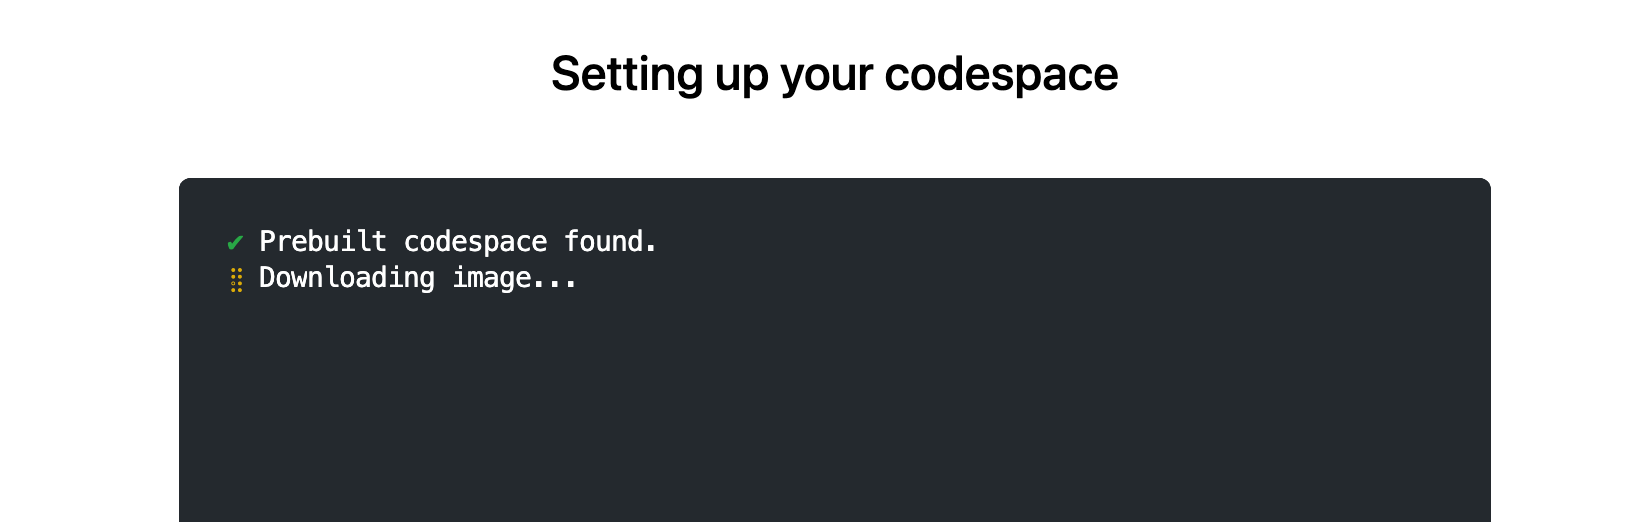 Снимок экрана: страница "Настройка пространства кода" с текстом : "Предварительно созданное пространство кода найдено. Скачивание образа".